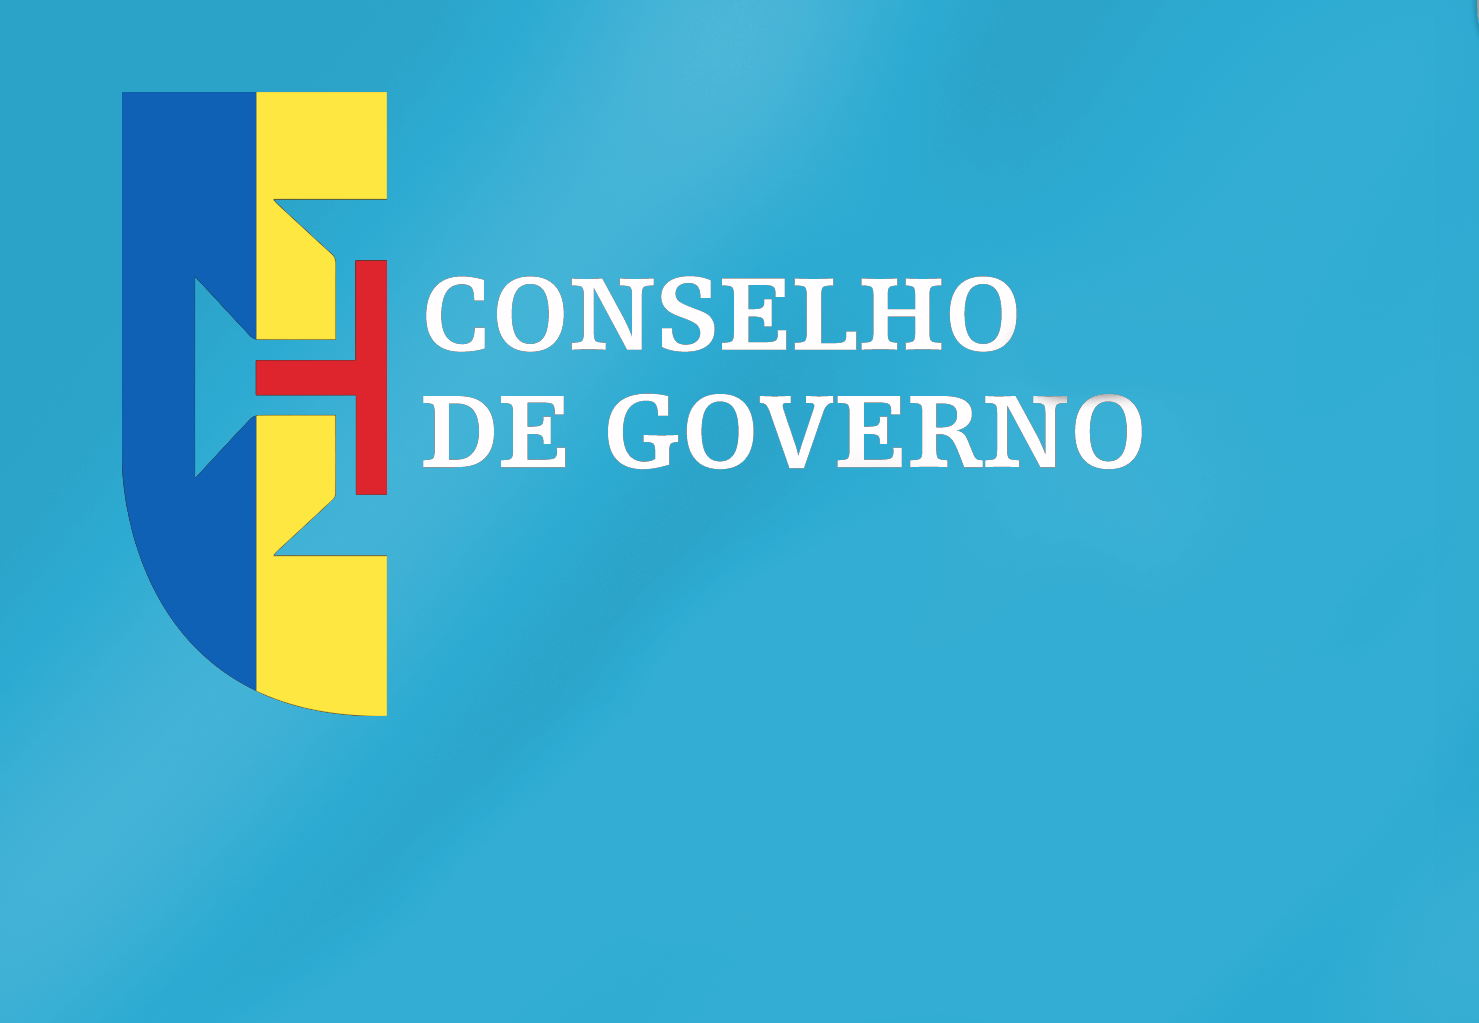 Conclusões Conselho de Governo - 14 de setembro de 2022